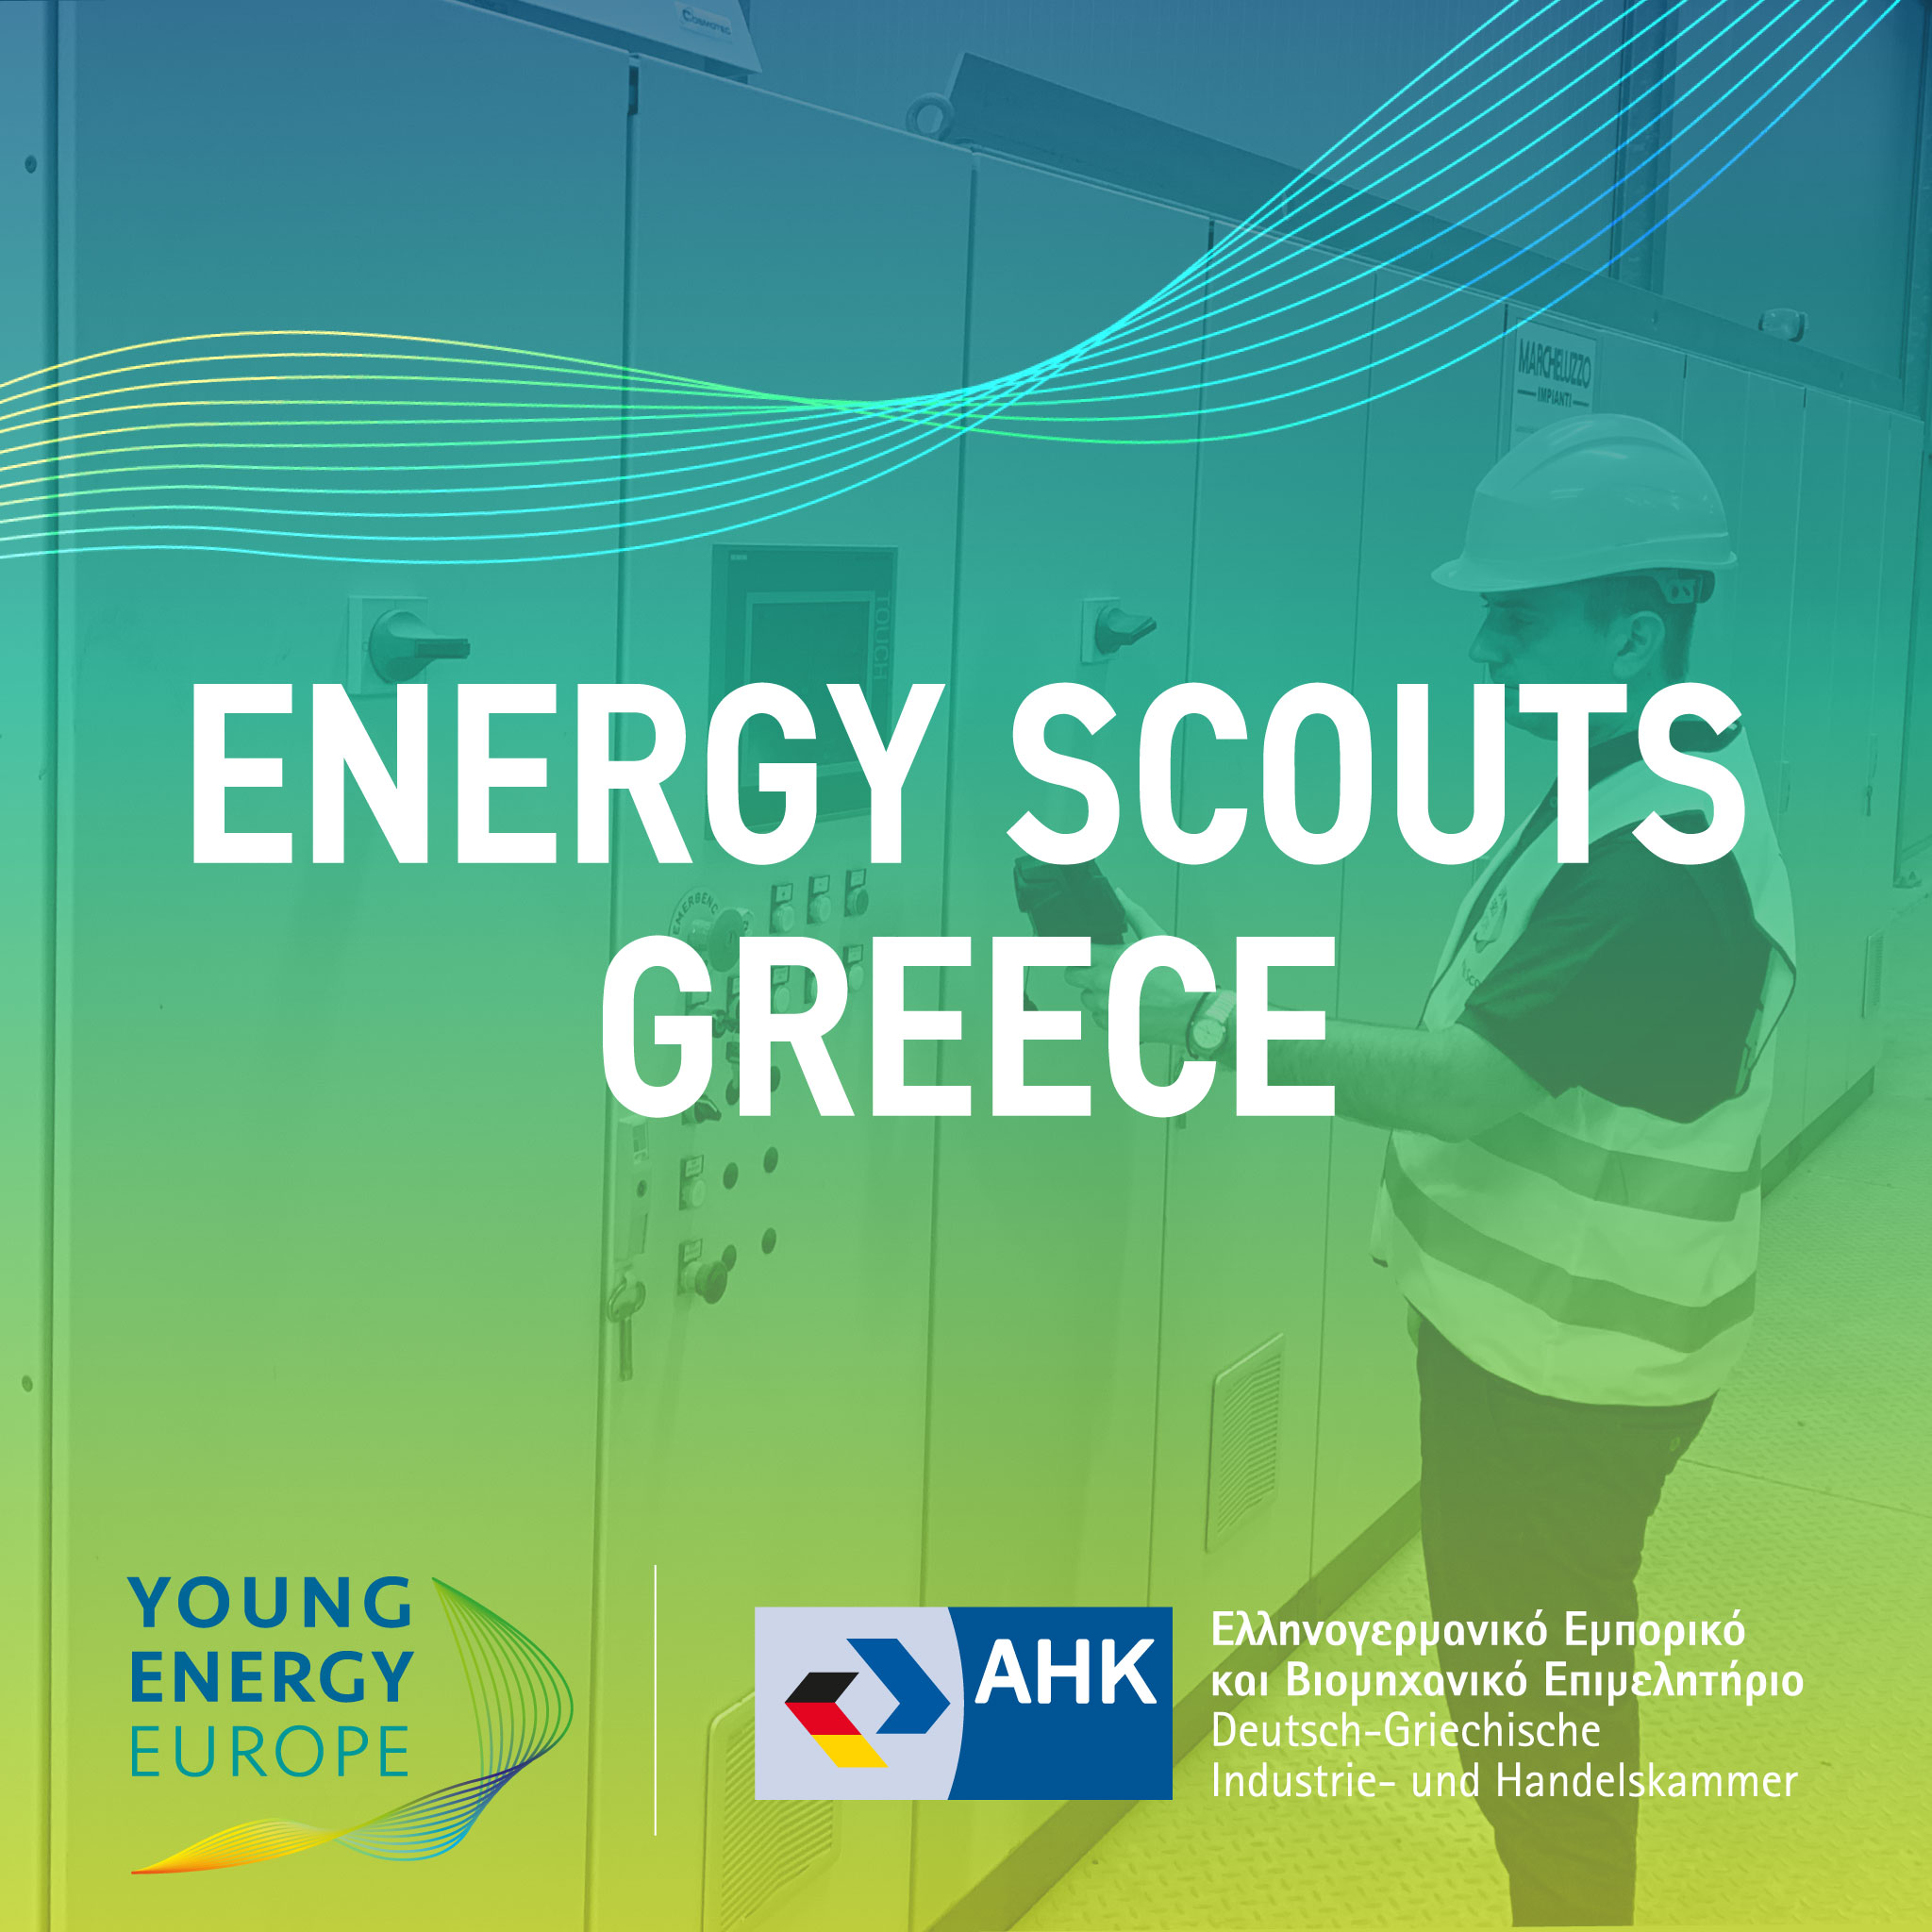 Παράταση δηλώσεων συμμετοχής μέχρι 17 Μαρτίου για το σεμινάριο εξοικονόμησης ενέργειας “Energy Scouts”